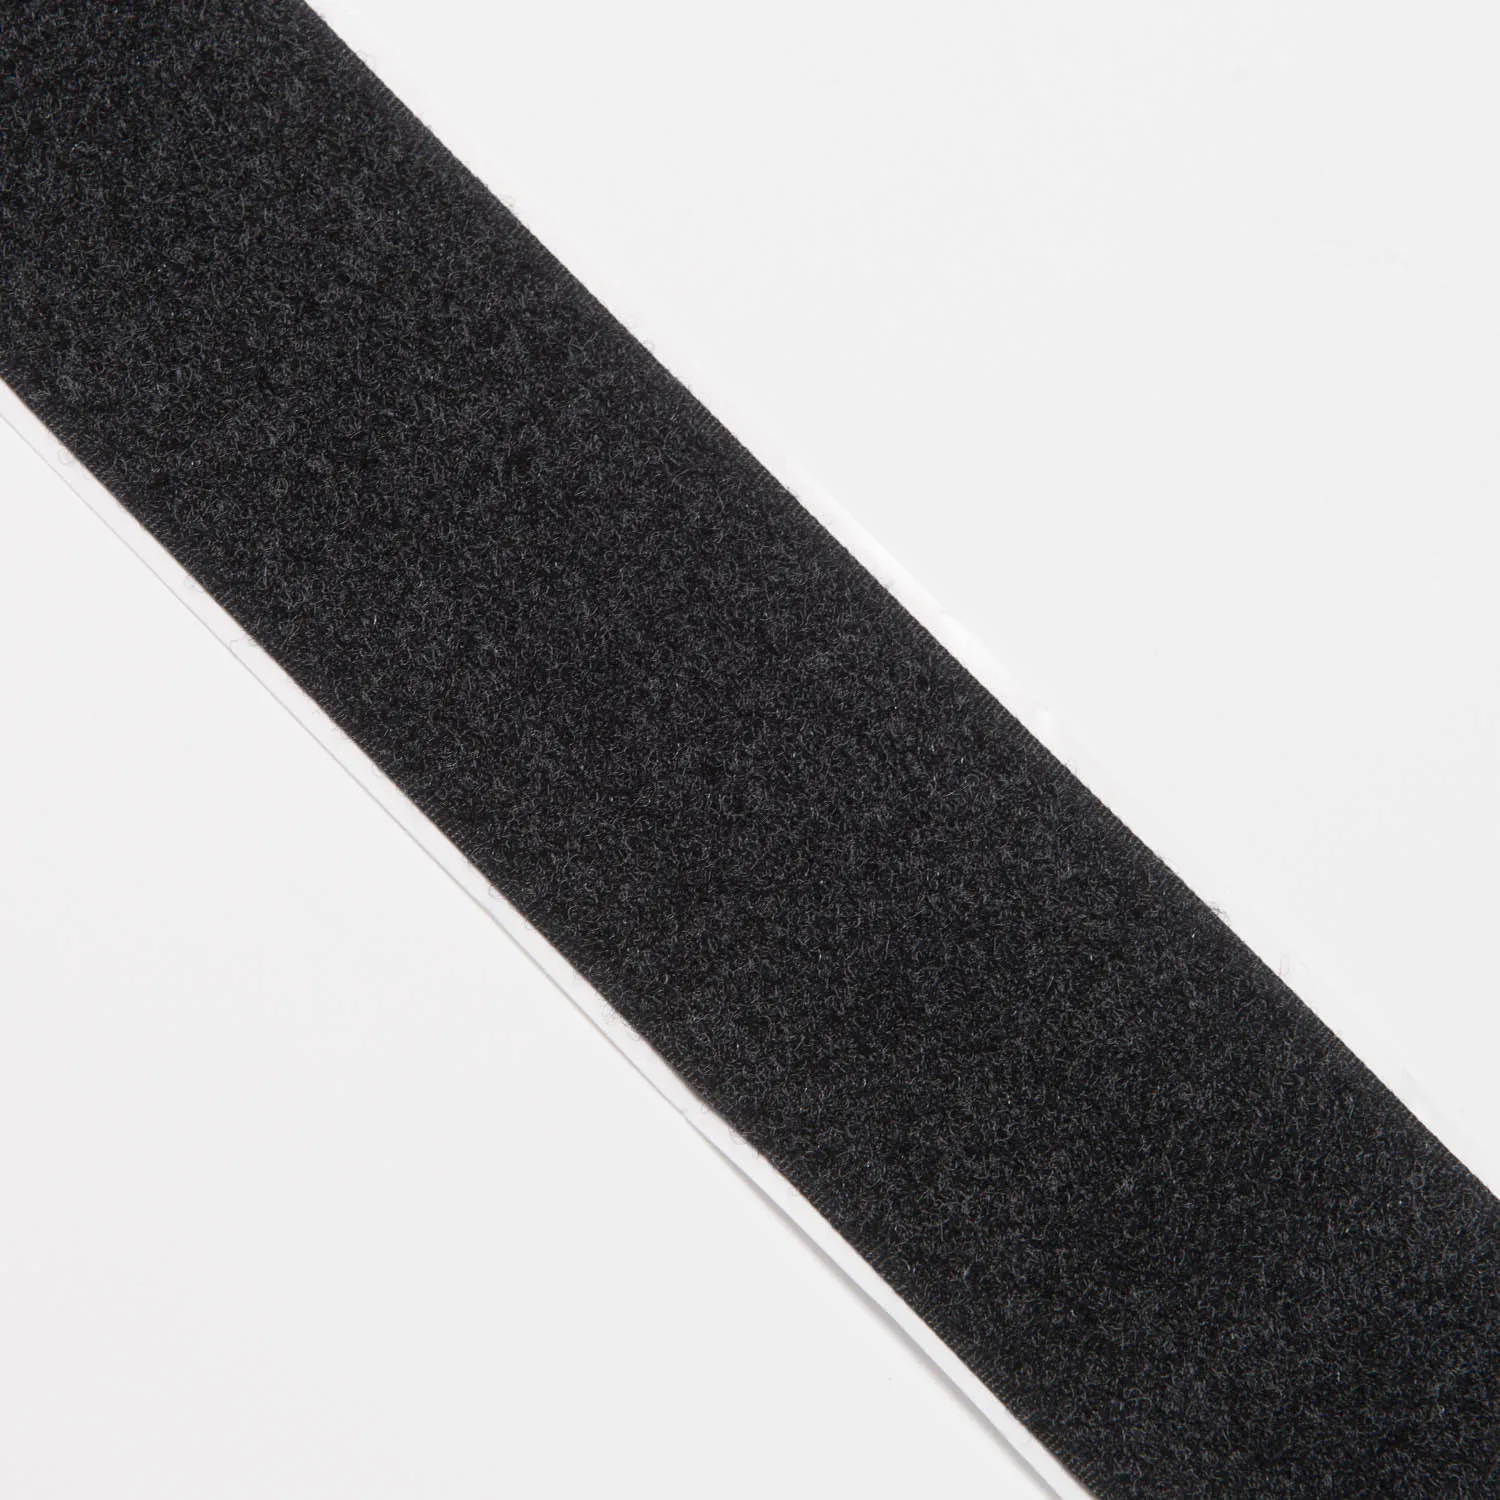 50mm Endlos-Klettverschluss selbstklebend Flauschband schwarz